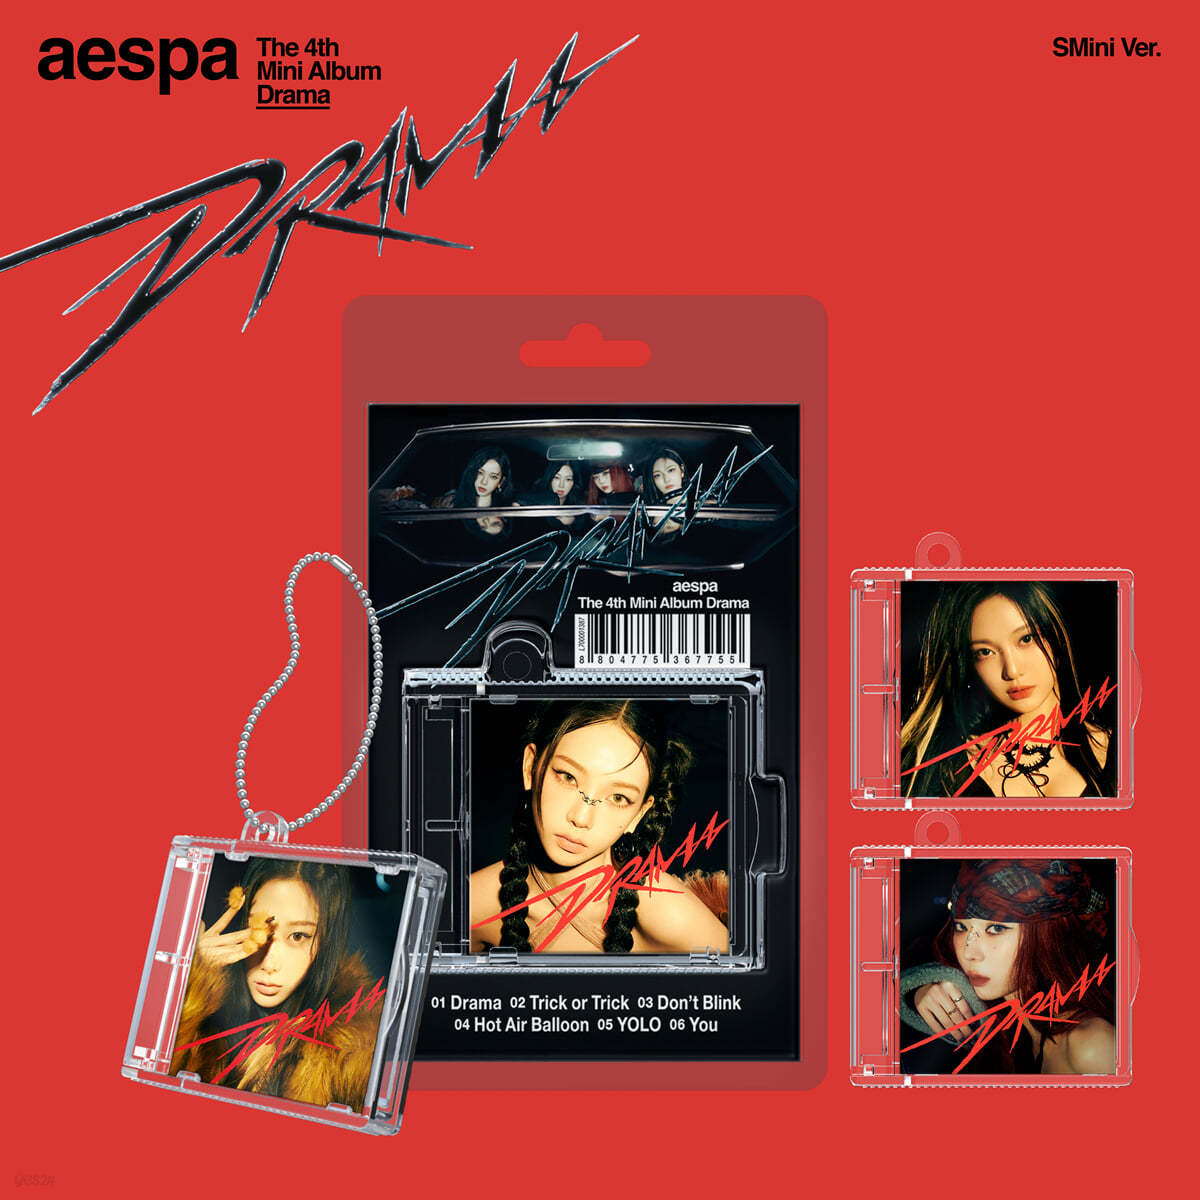 에스파 (aespa) - 미니앨범 4집 : Drama [SMini Ver.](스마트앨범) [4종 중 1종 랜덤발송]